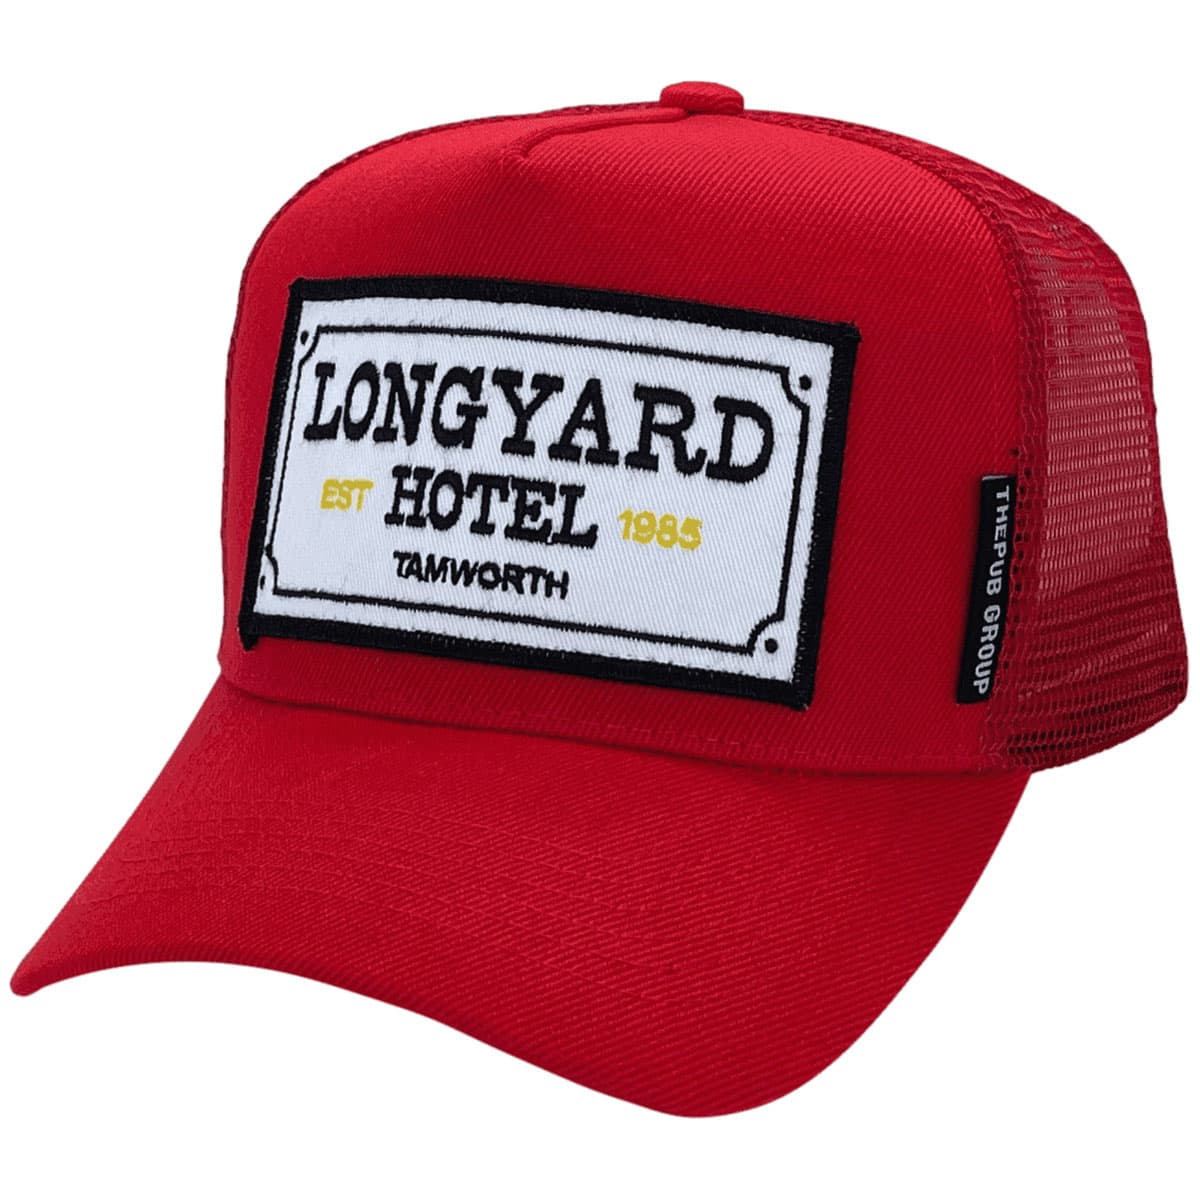 
custom basic trucker hat